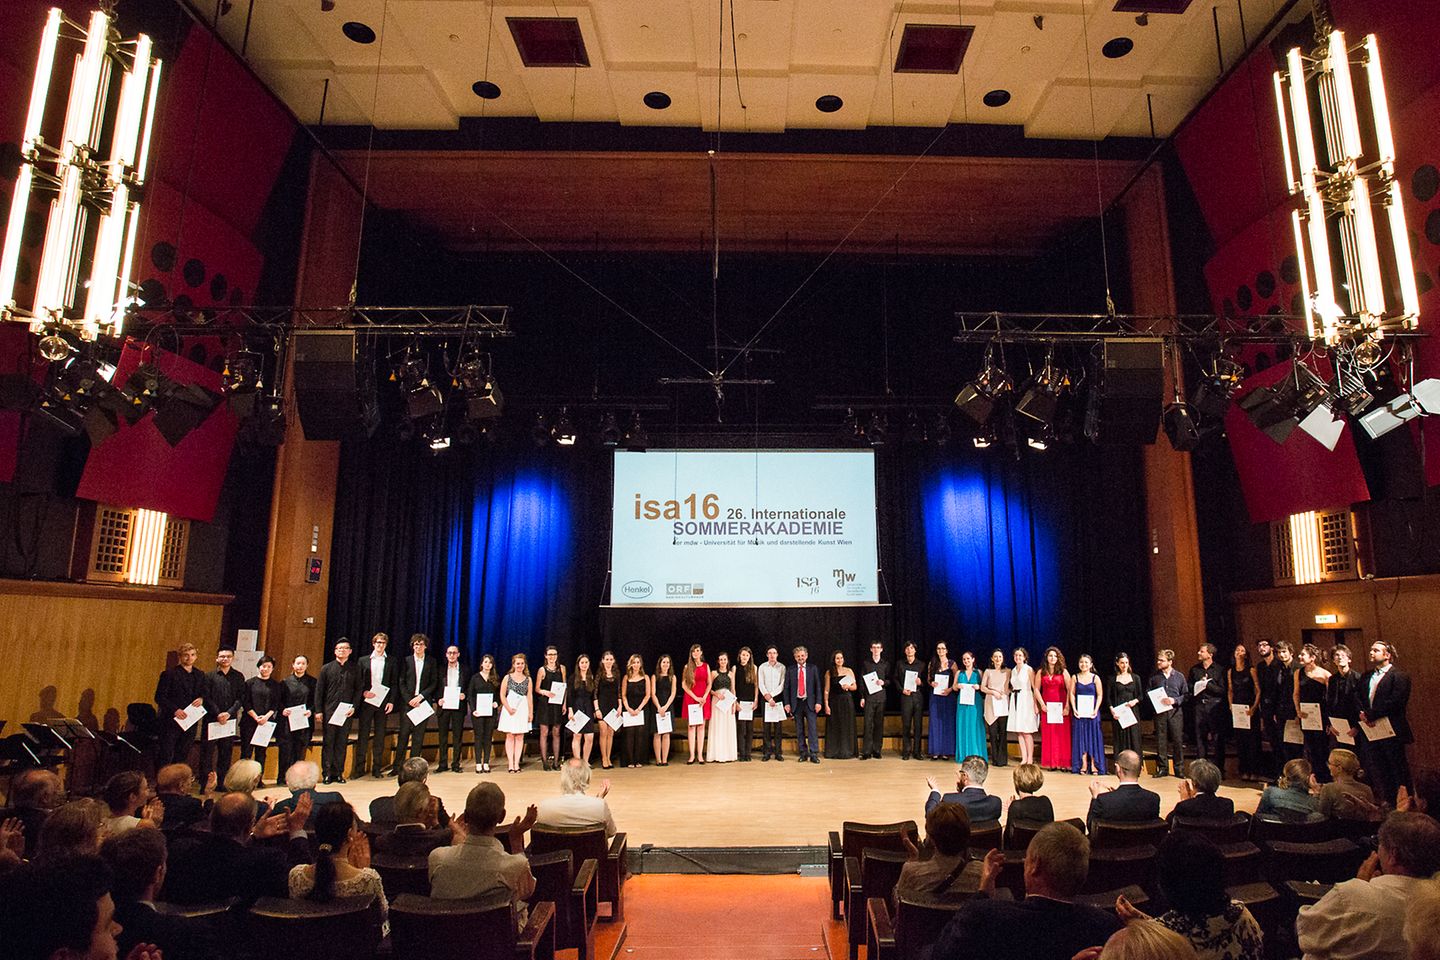 Bei einem Abschlusskonzert im ORF RadioKulturhaus Wien wurden die Preisträger der diesjährigen Internationalen Sommerakademie (isa) ausgezeichnet.